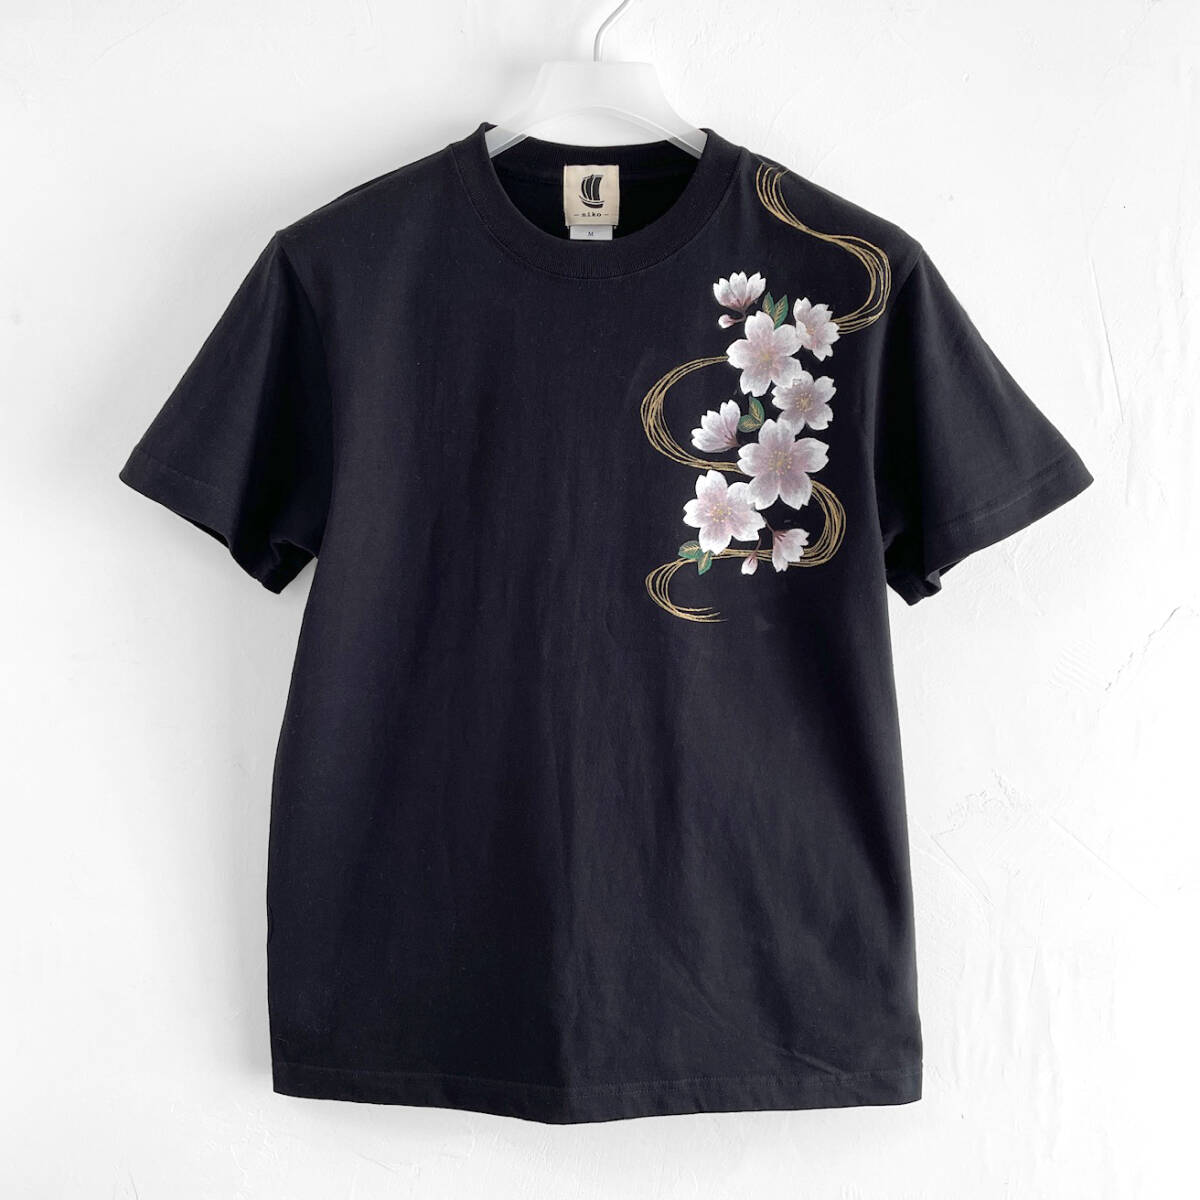  men's wave Sakura pattern T-shirt S size hand .. T-shirt black night Sakura peace pattern hand made 